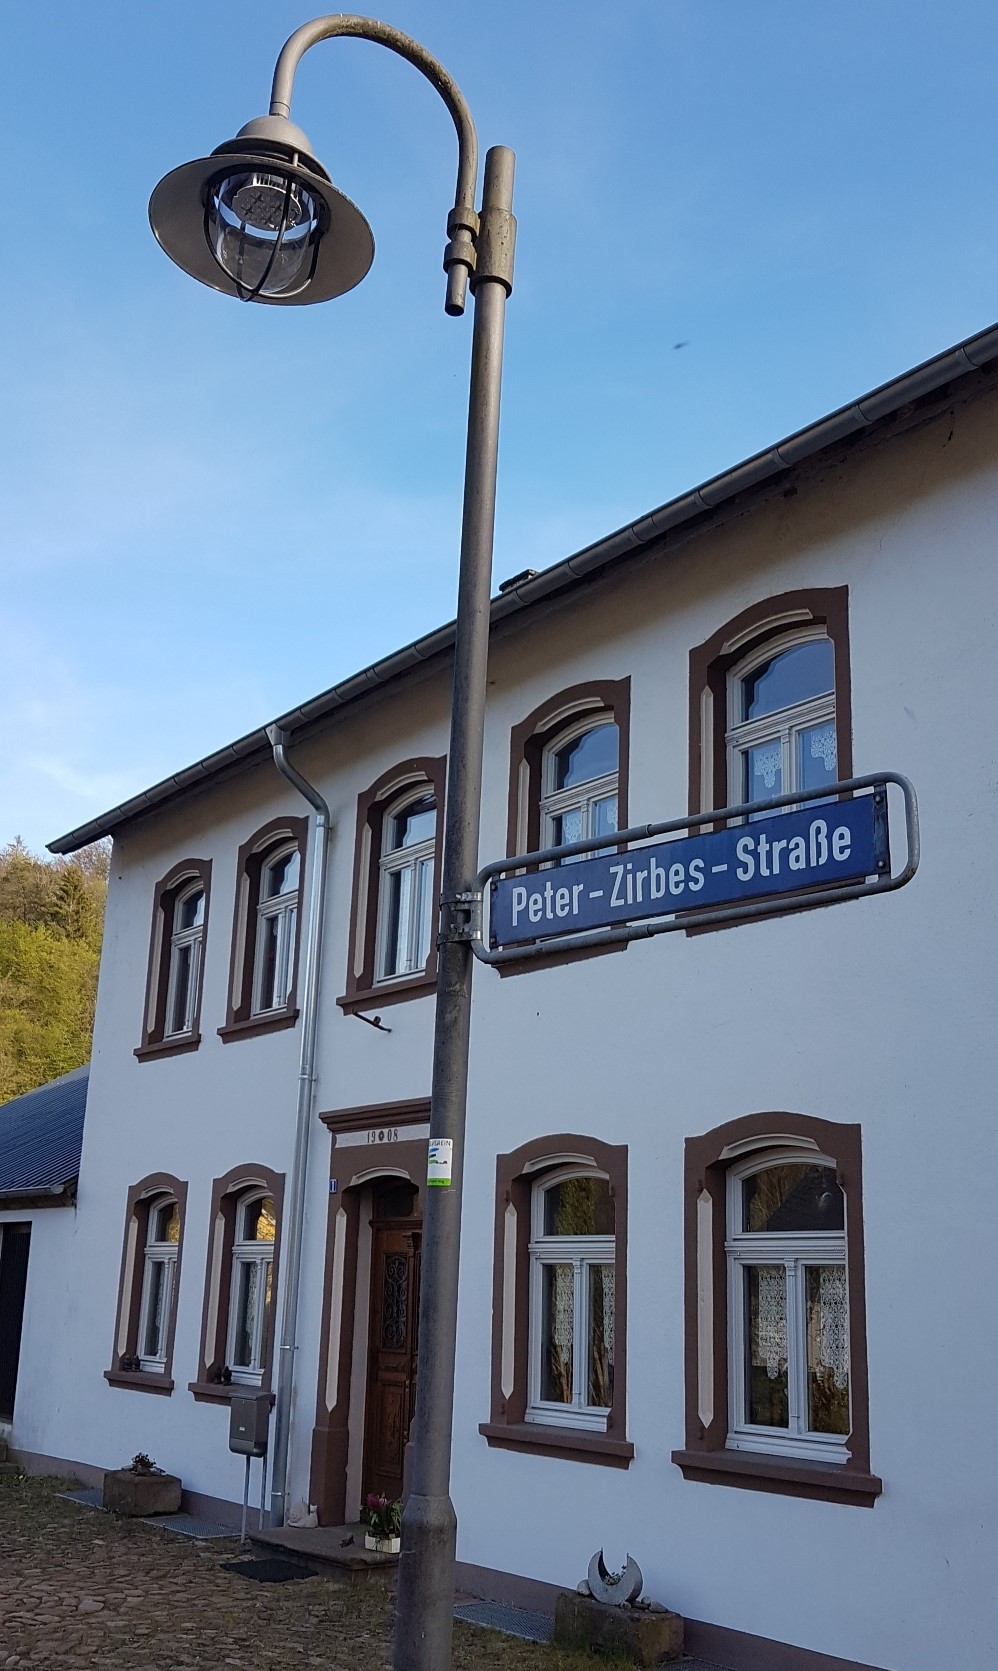 Peter-Zirbes Straße